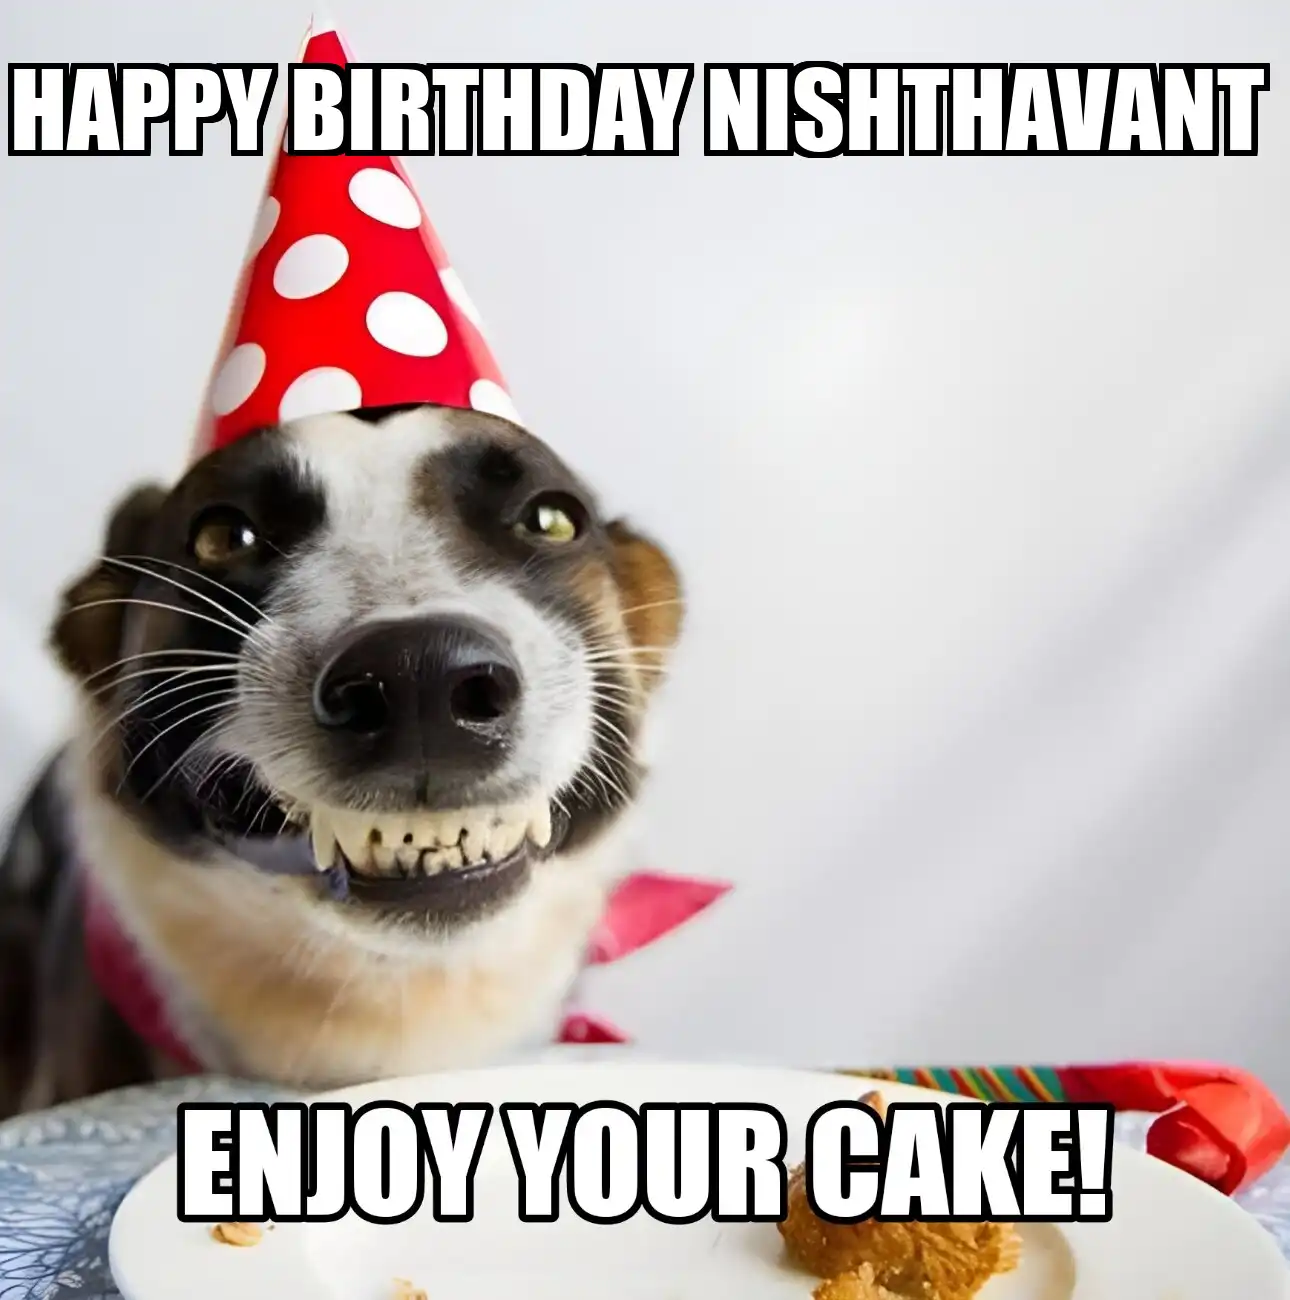 Happy Birthday Nishthavant Enjoy Your Cake Dog Meme